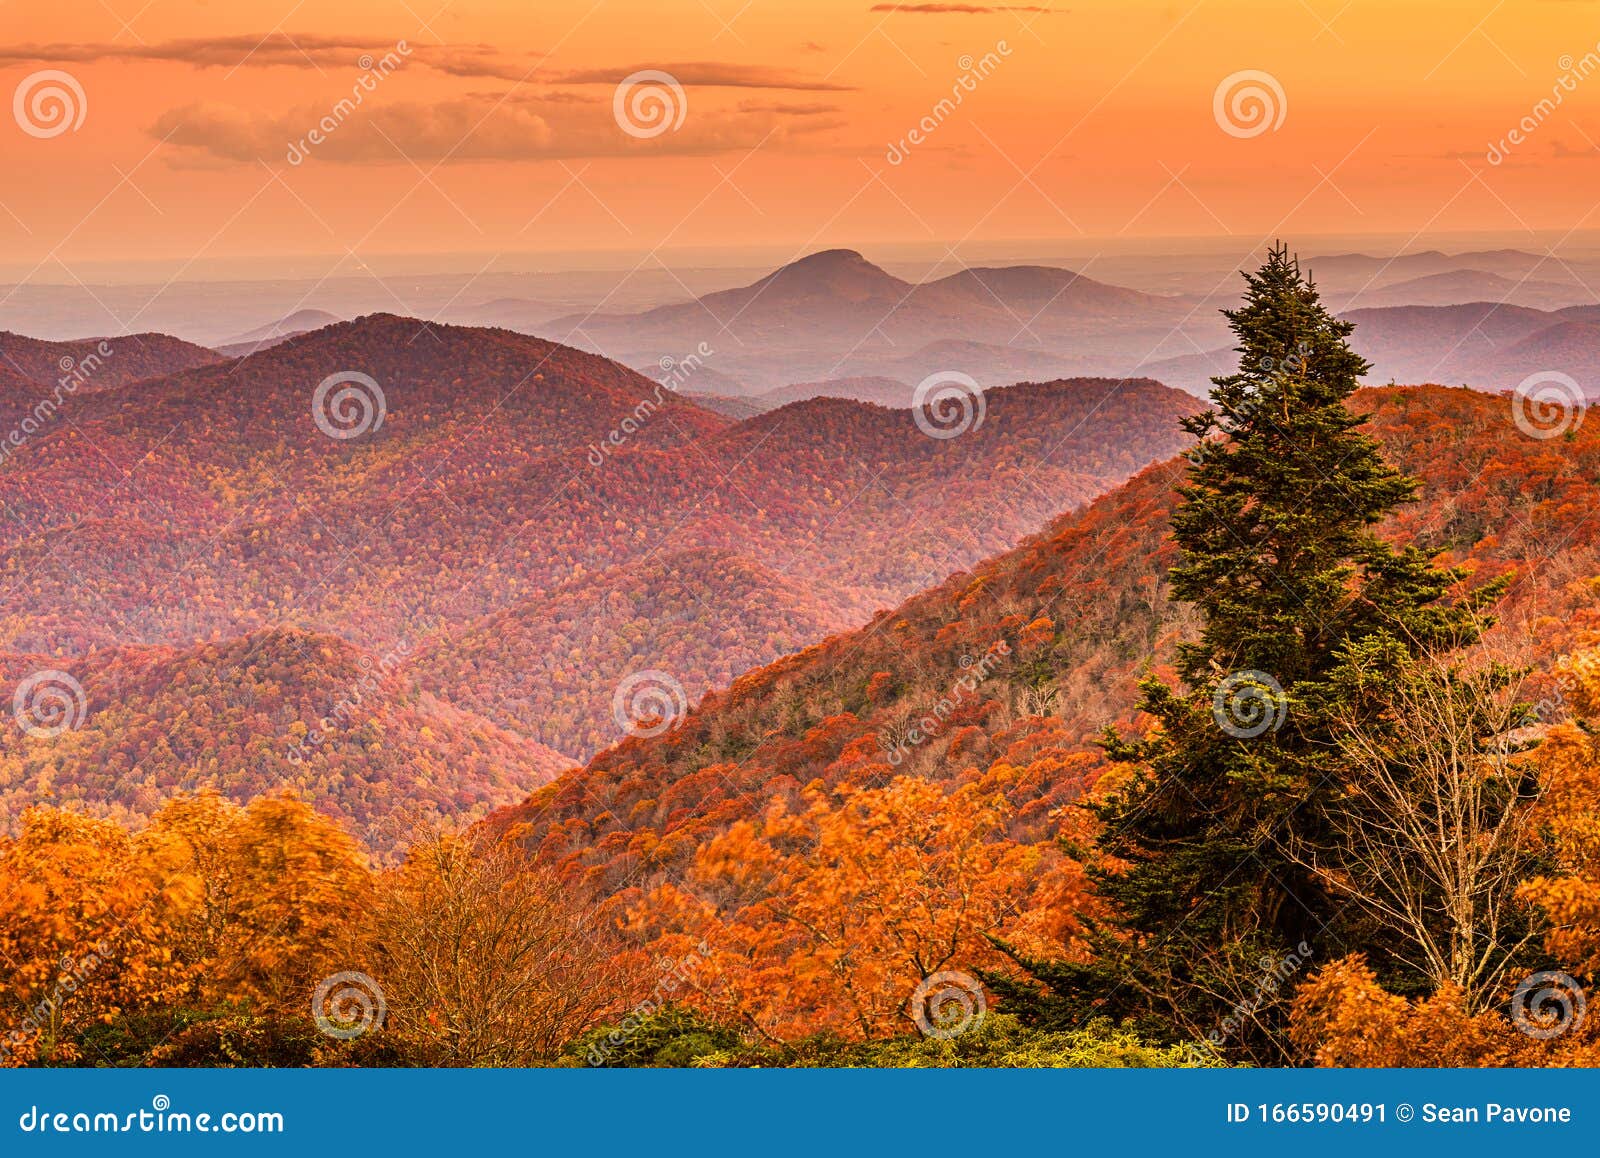 brasstown bald, georgia, usa view of blue ridge mountains in autumn